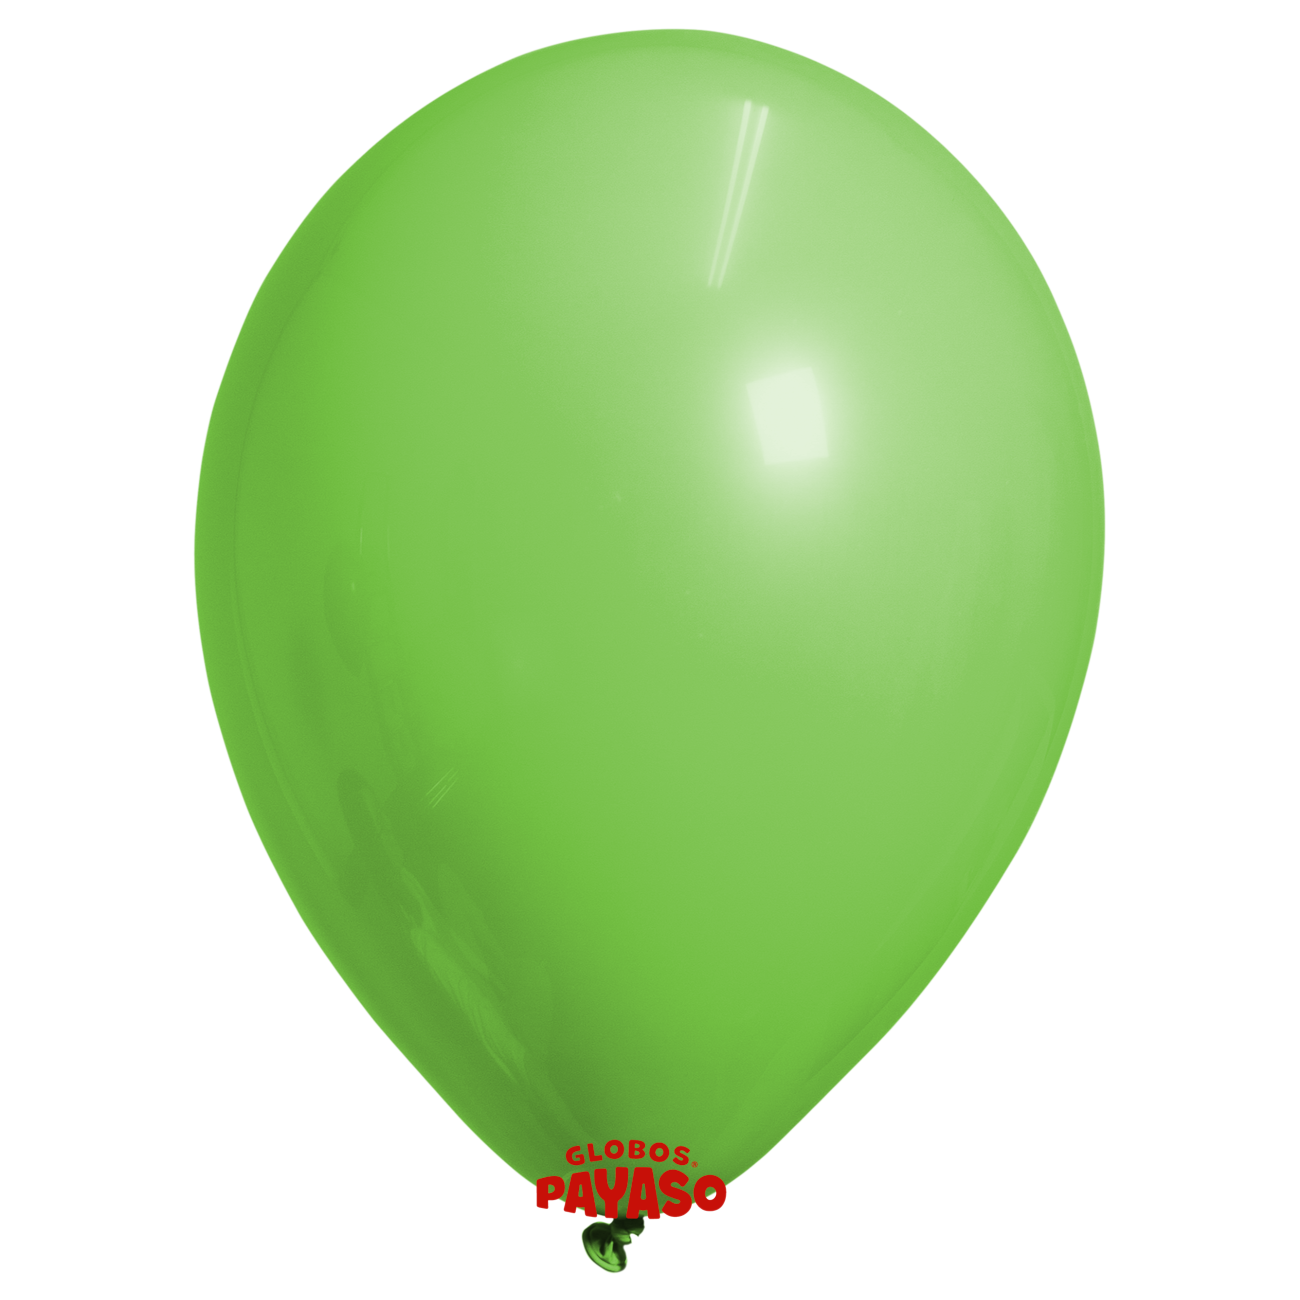 Globos Payaso / Unique 5" Lime Green Decorator Balloon